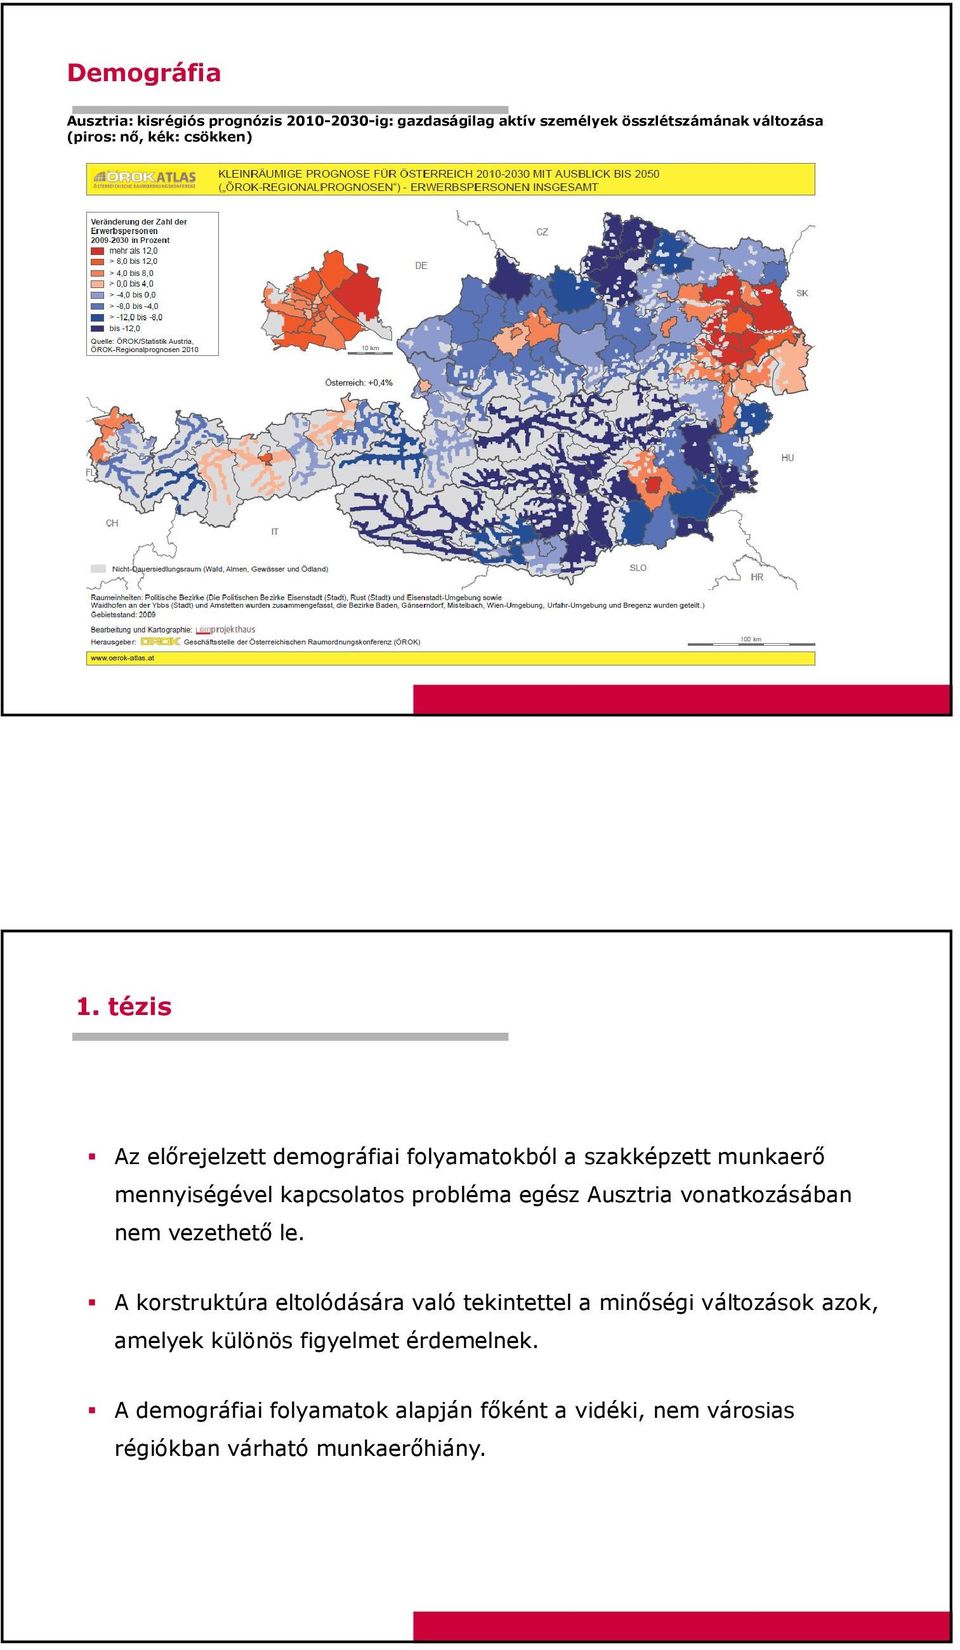 tézis Az előrejelzett demográfiai folyamatokból a szakképzett munkaerő mennyiségével kapcsolatos probléma egész Ausztria